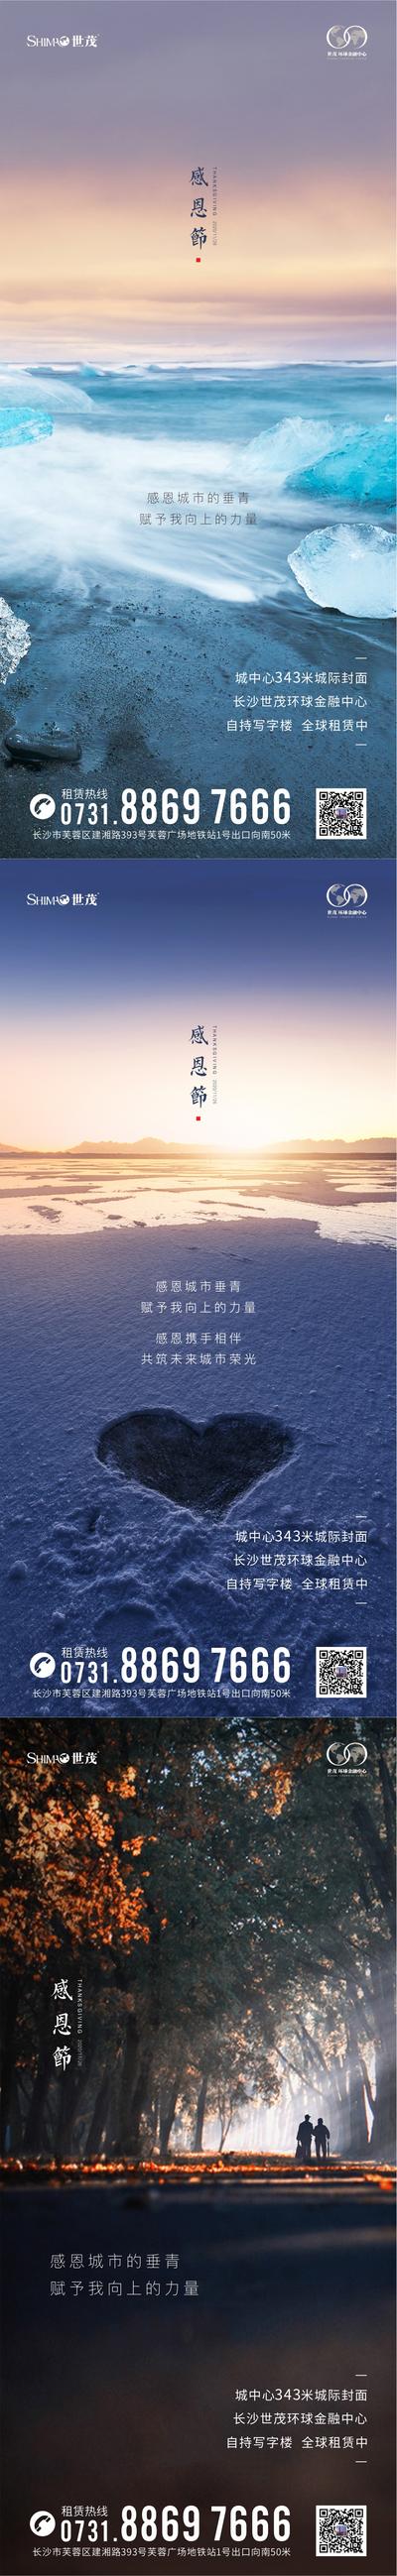 南门网 感恩节海报